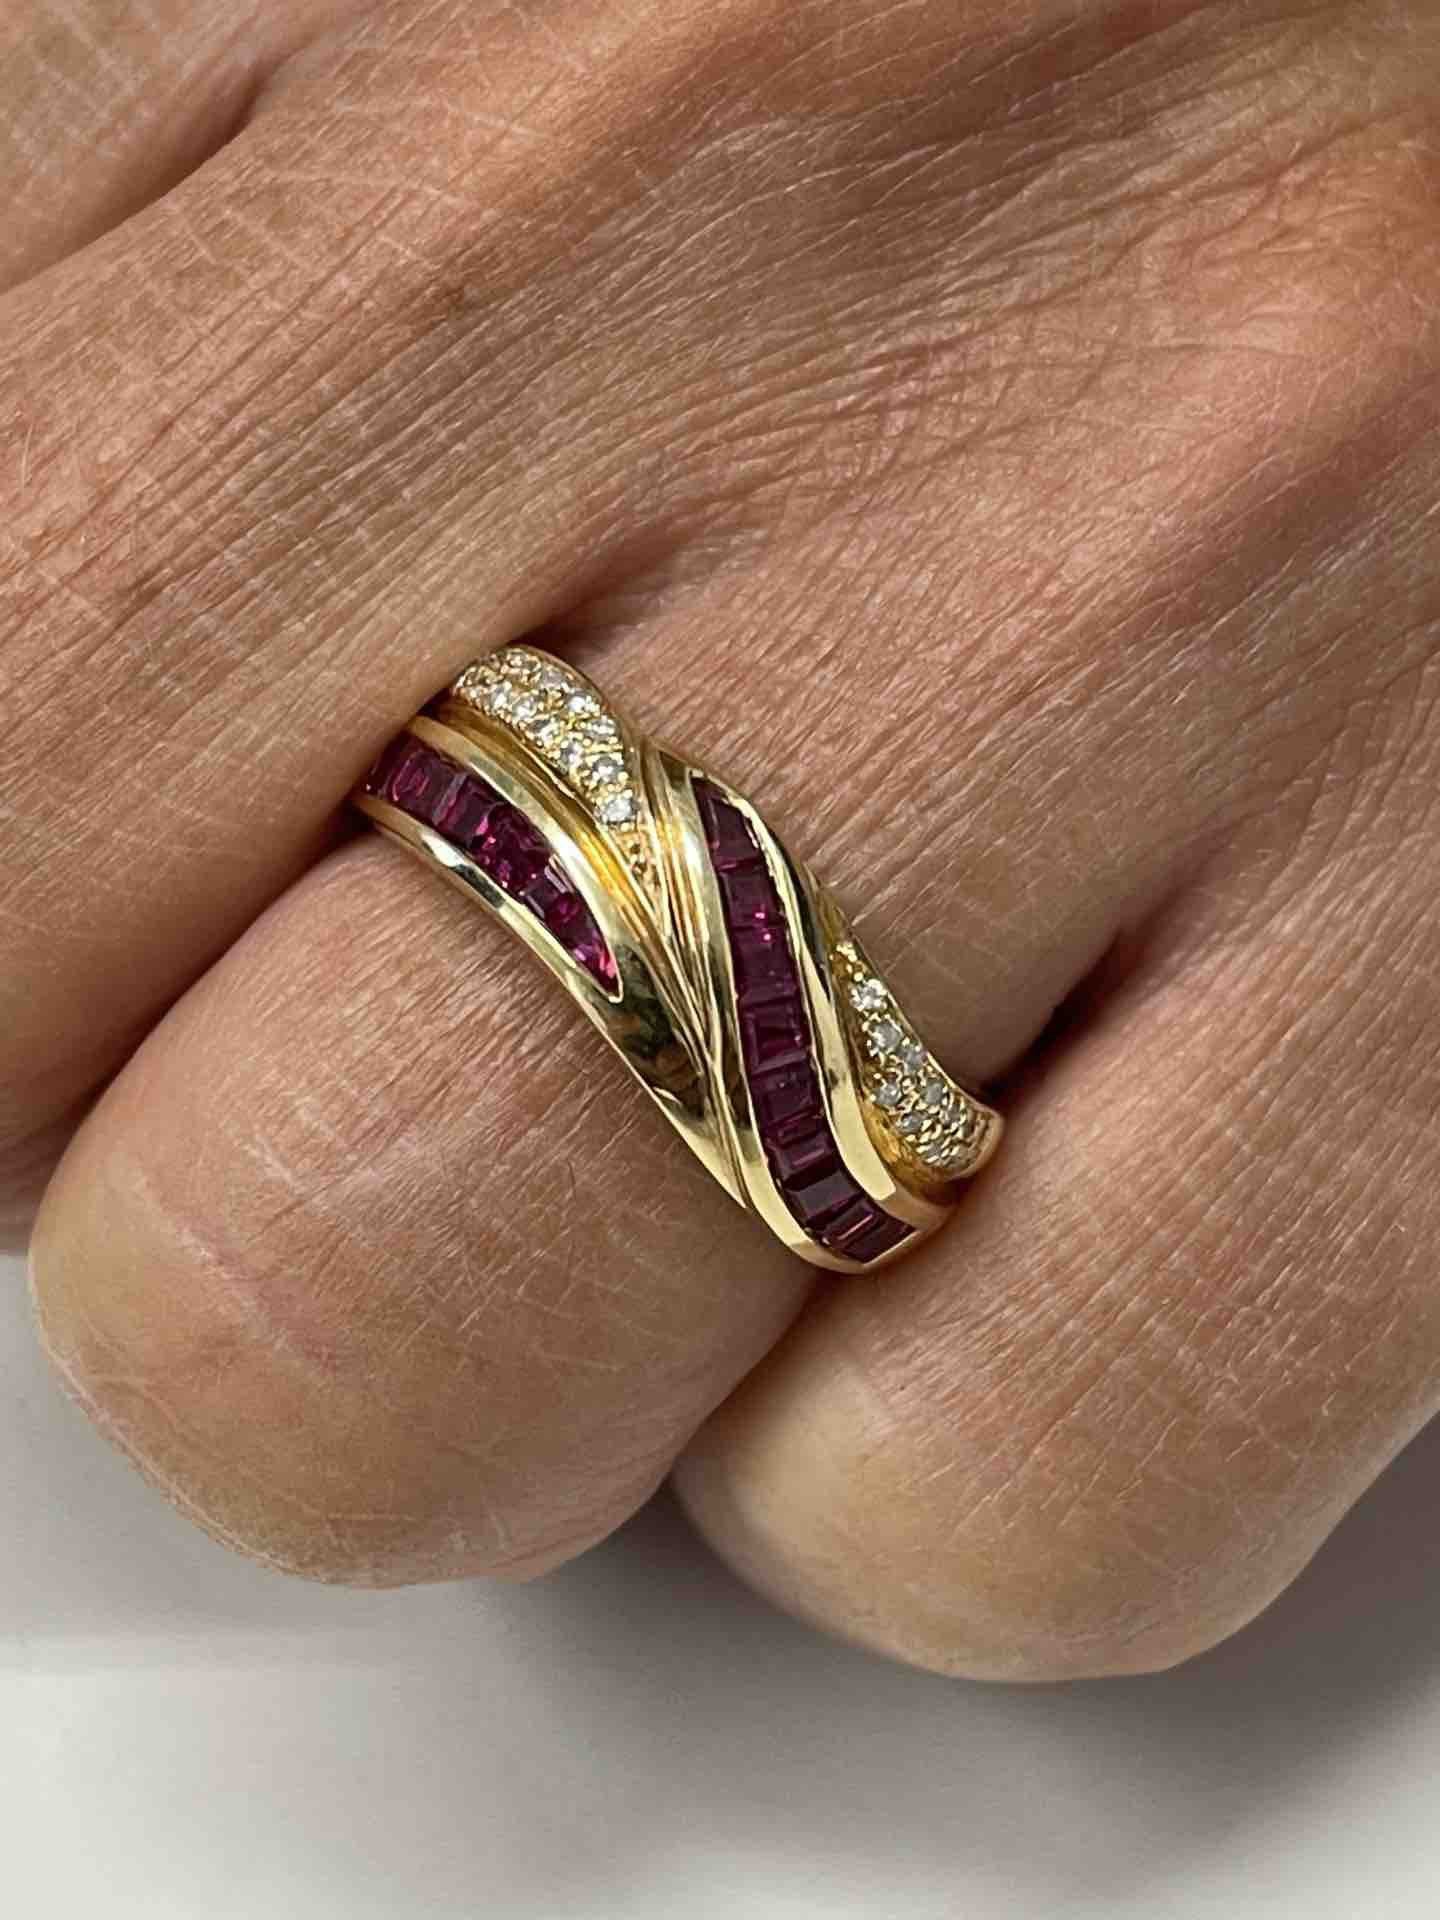 ALYA anillo oro amarillo de 18 kts brillantes y rubíes